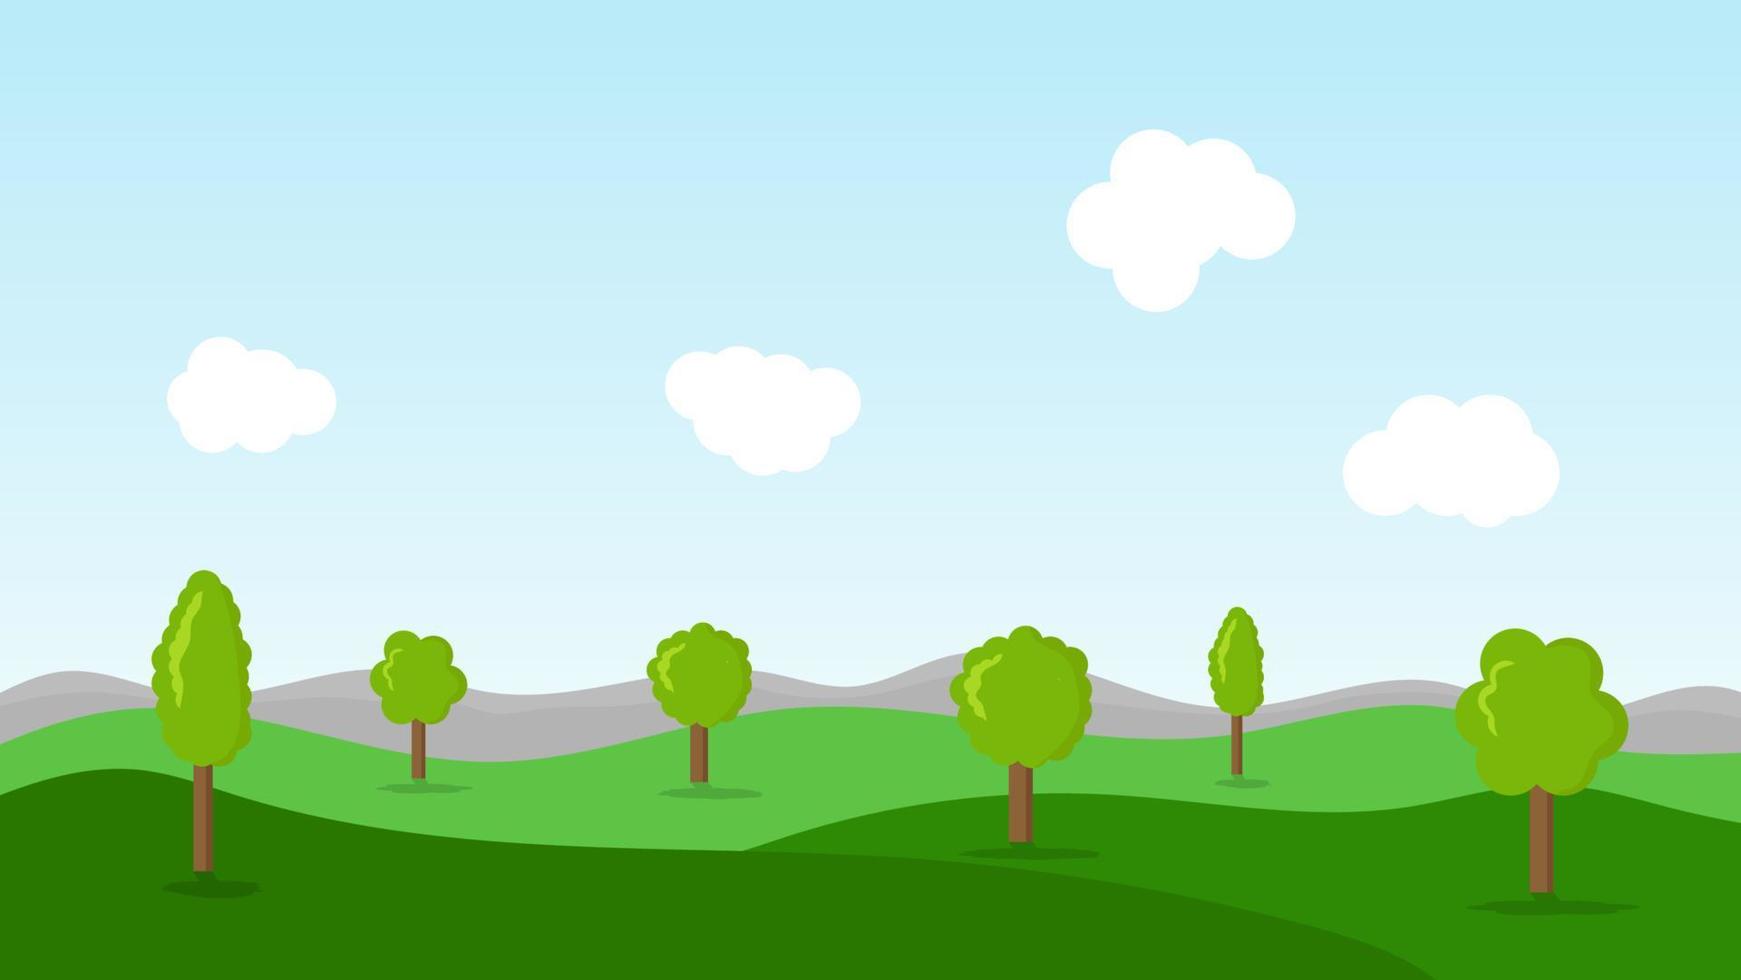 escena de dibujos animados de paisaje con árboles verdes en las colinas y nubes blancas esponjosas en el fondo del cielo azul de verano vector